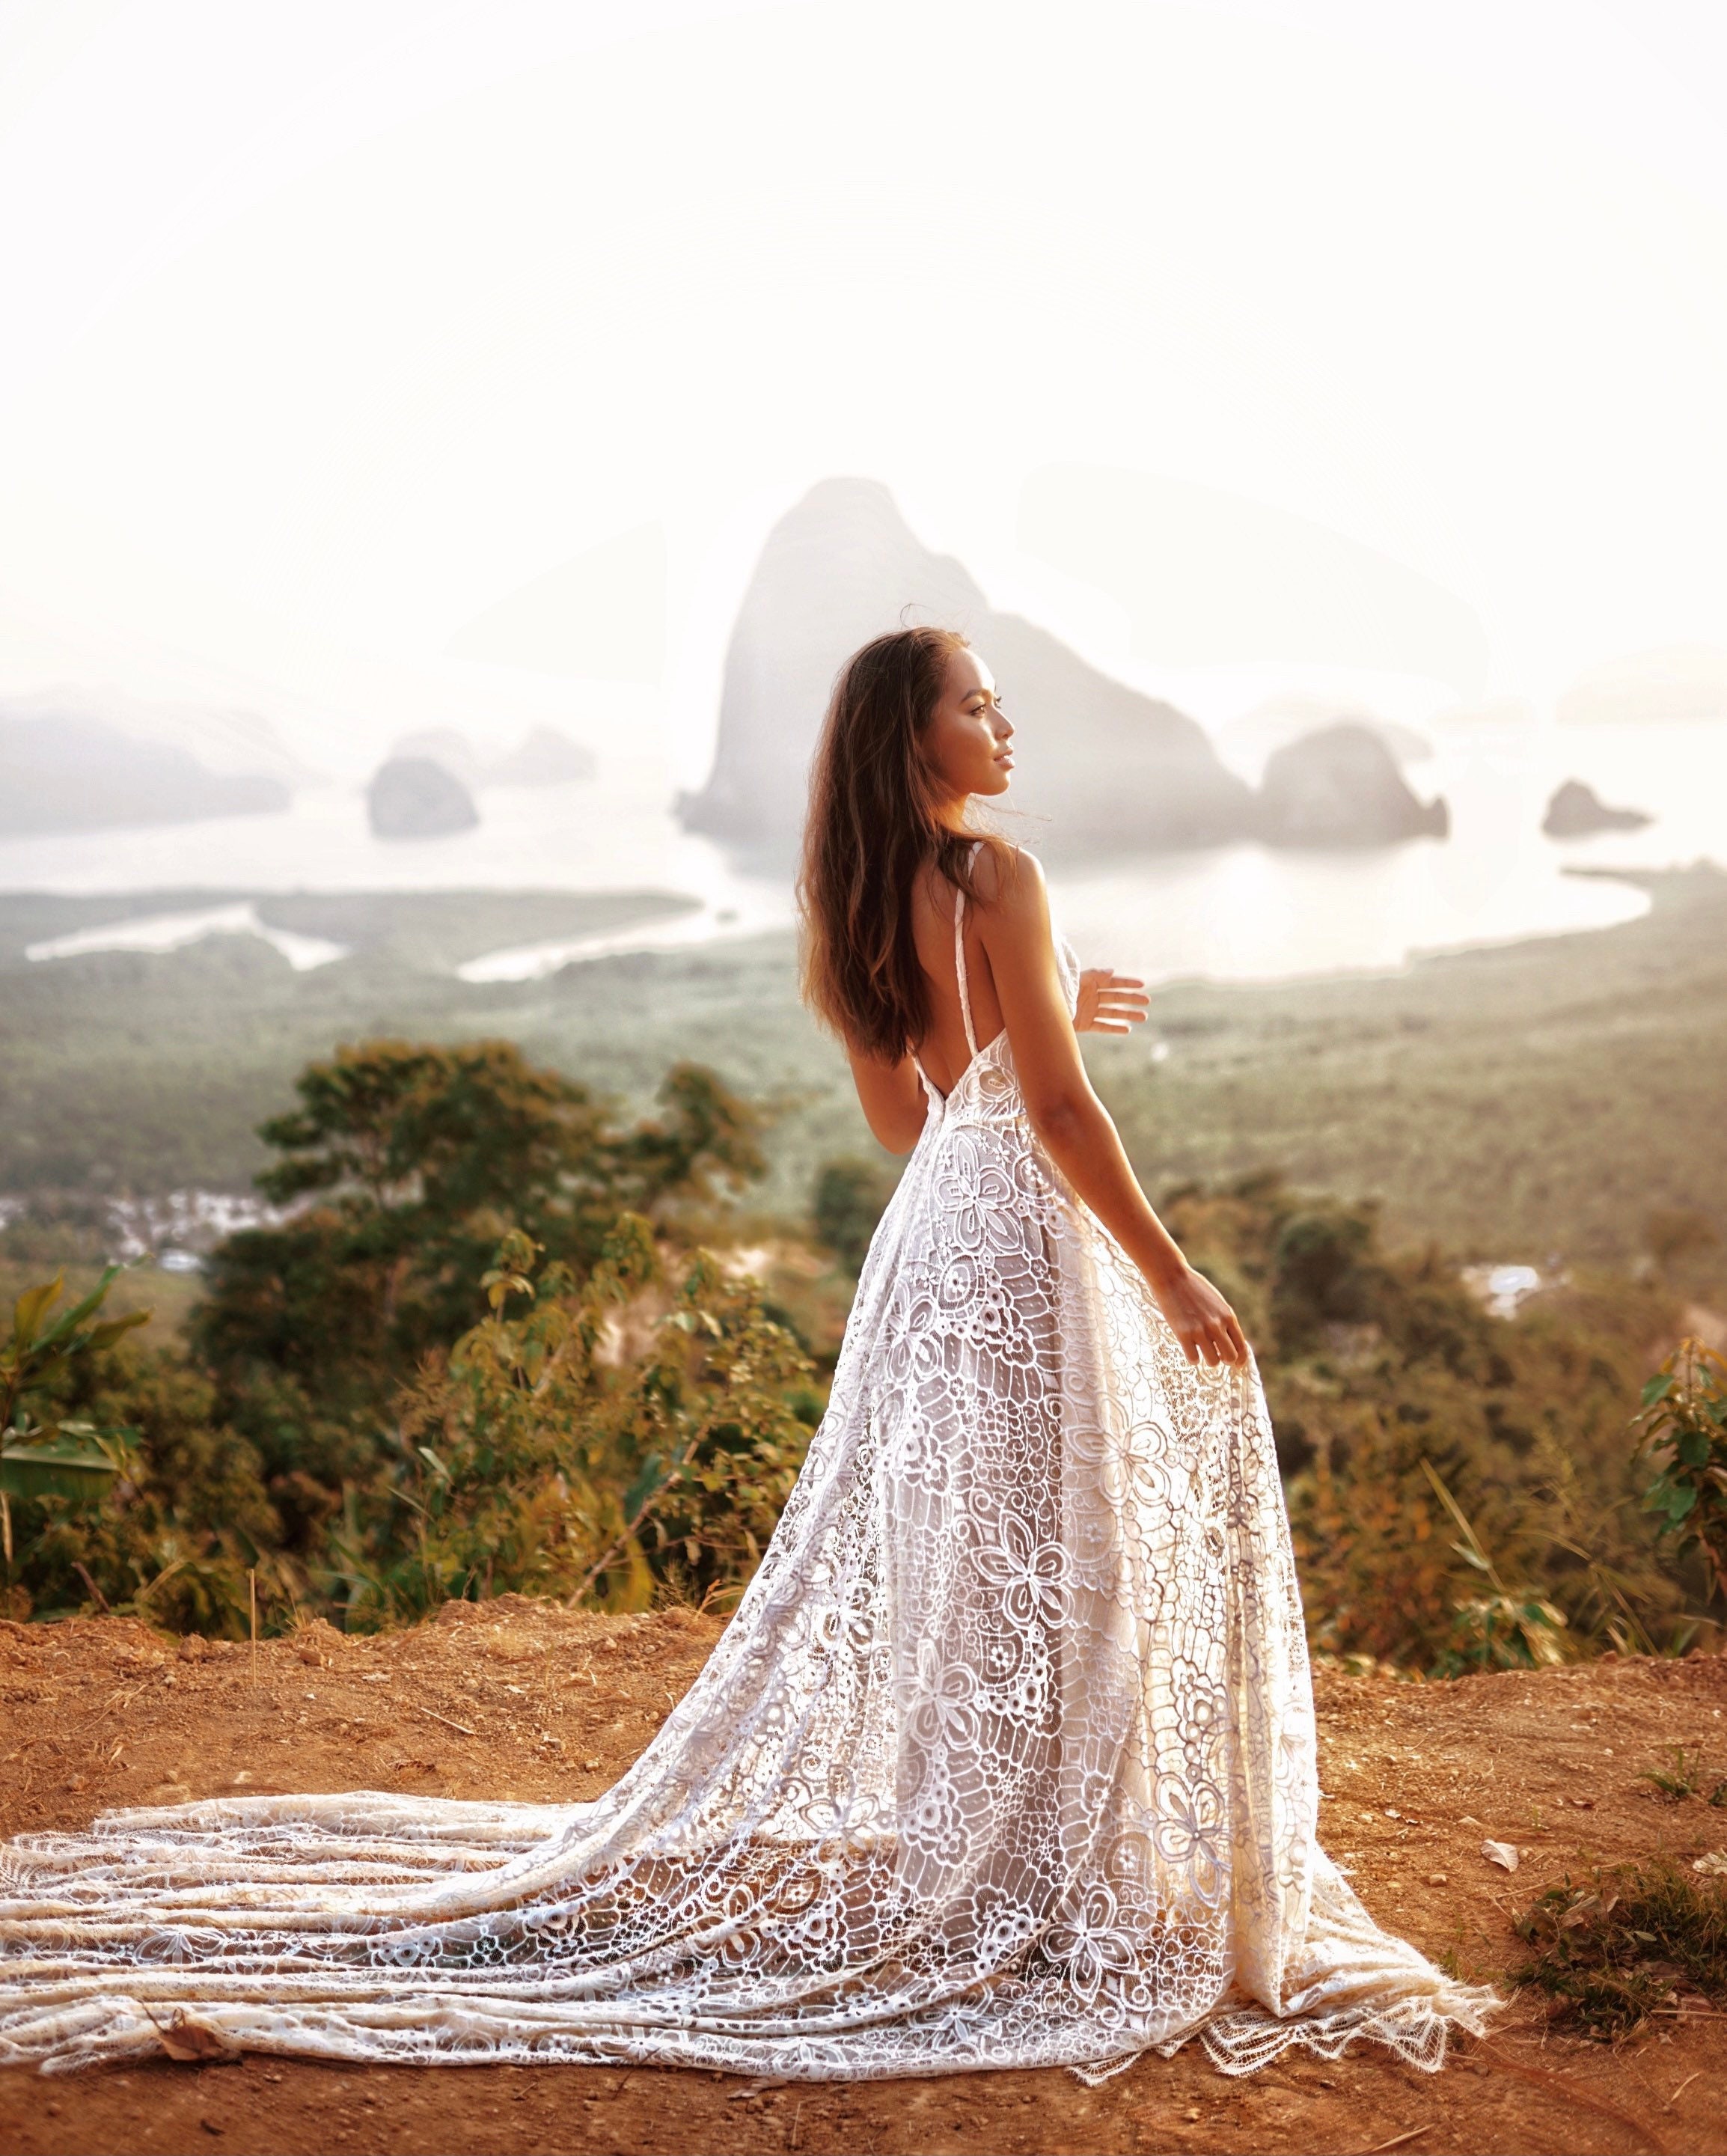 boho lace wedding dresses